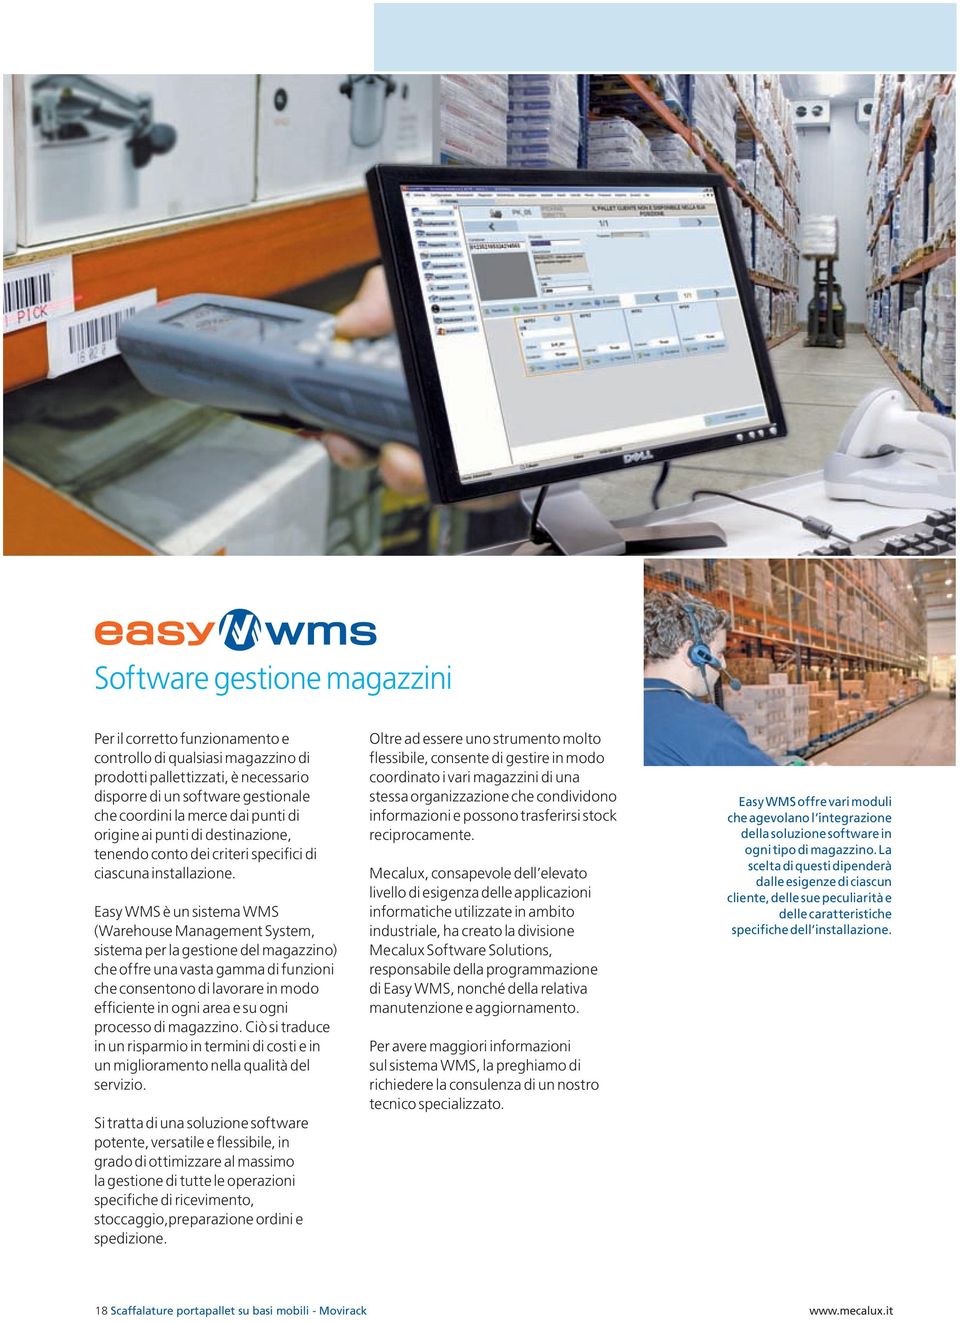 Easy WMS è un sistema WMS (Warehouse Management System, sistema per la gestione del magazzino) che offre una vasta gamma di funzioni che consentono di lavorare in modo efficiente in ogni area e su